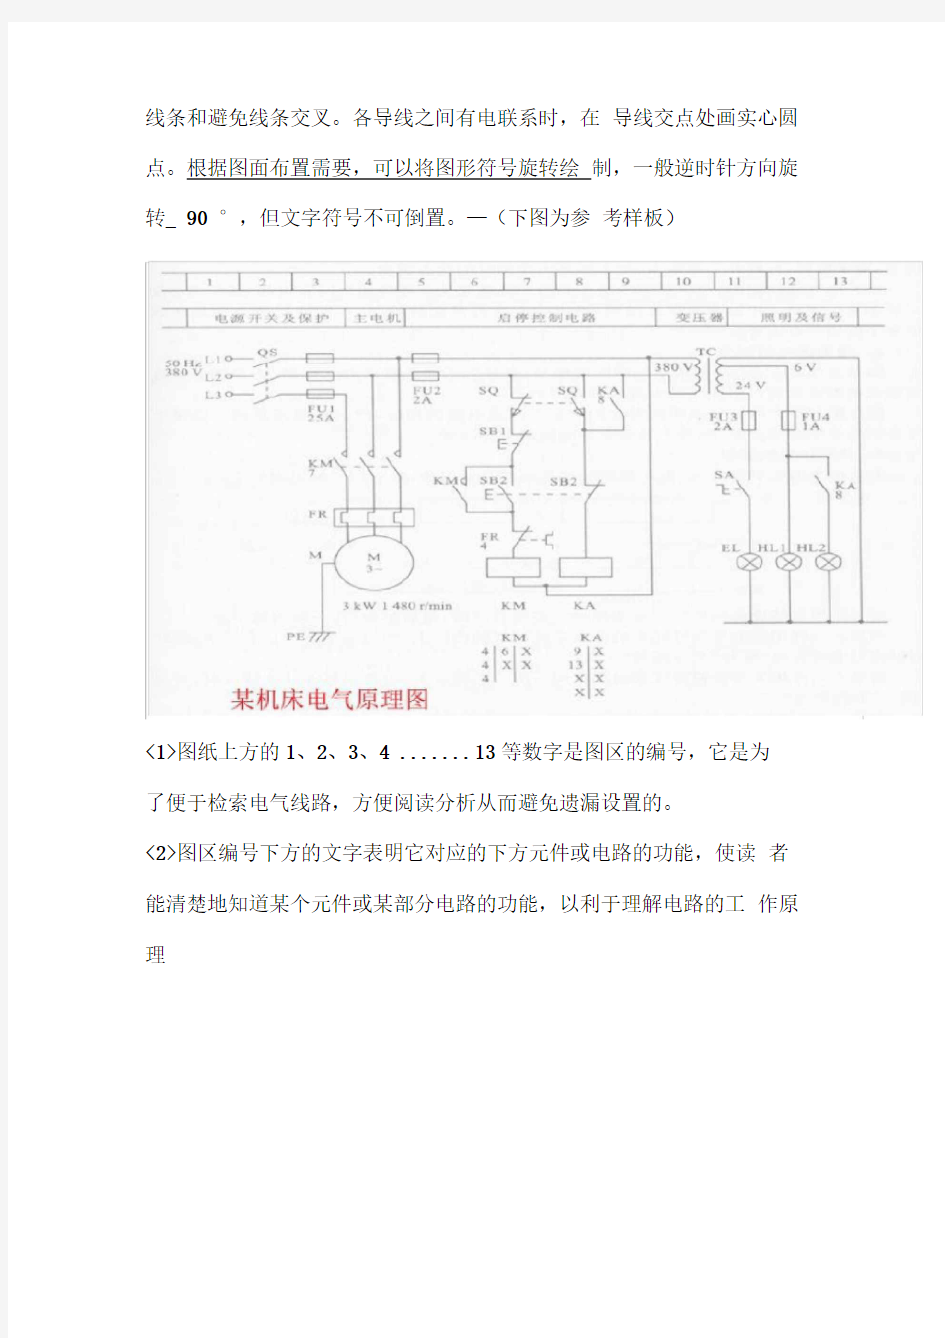 电气控制系统图的绘制及原则